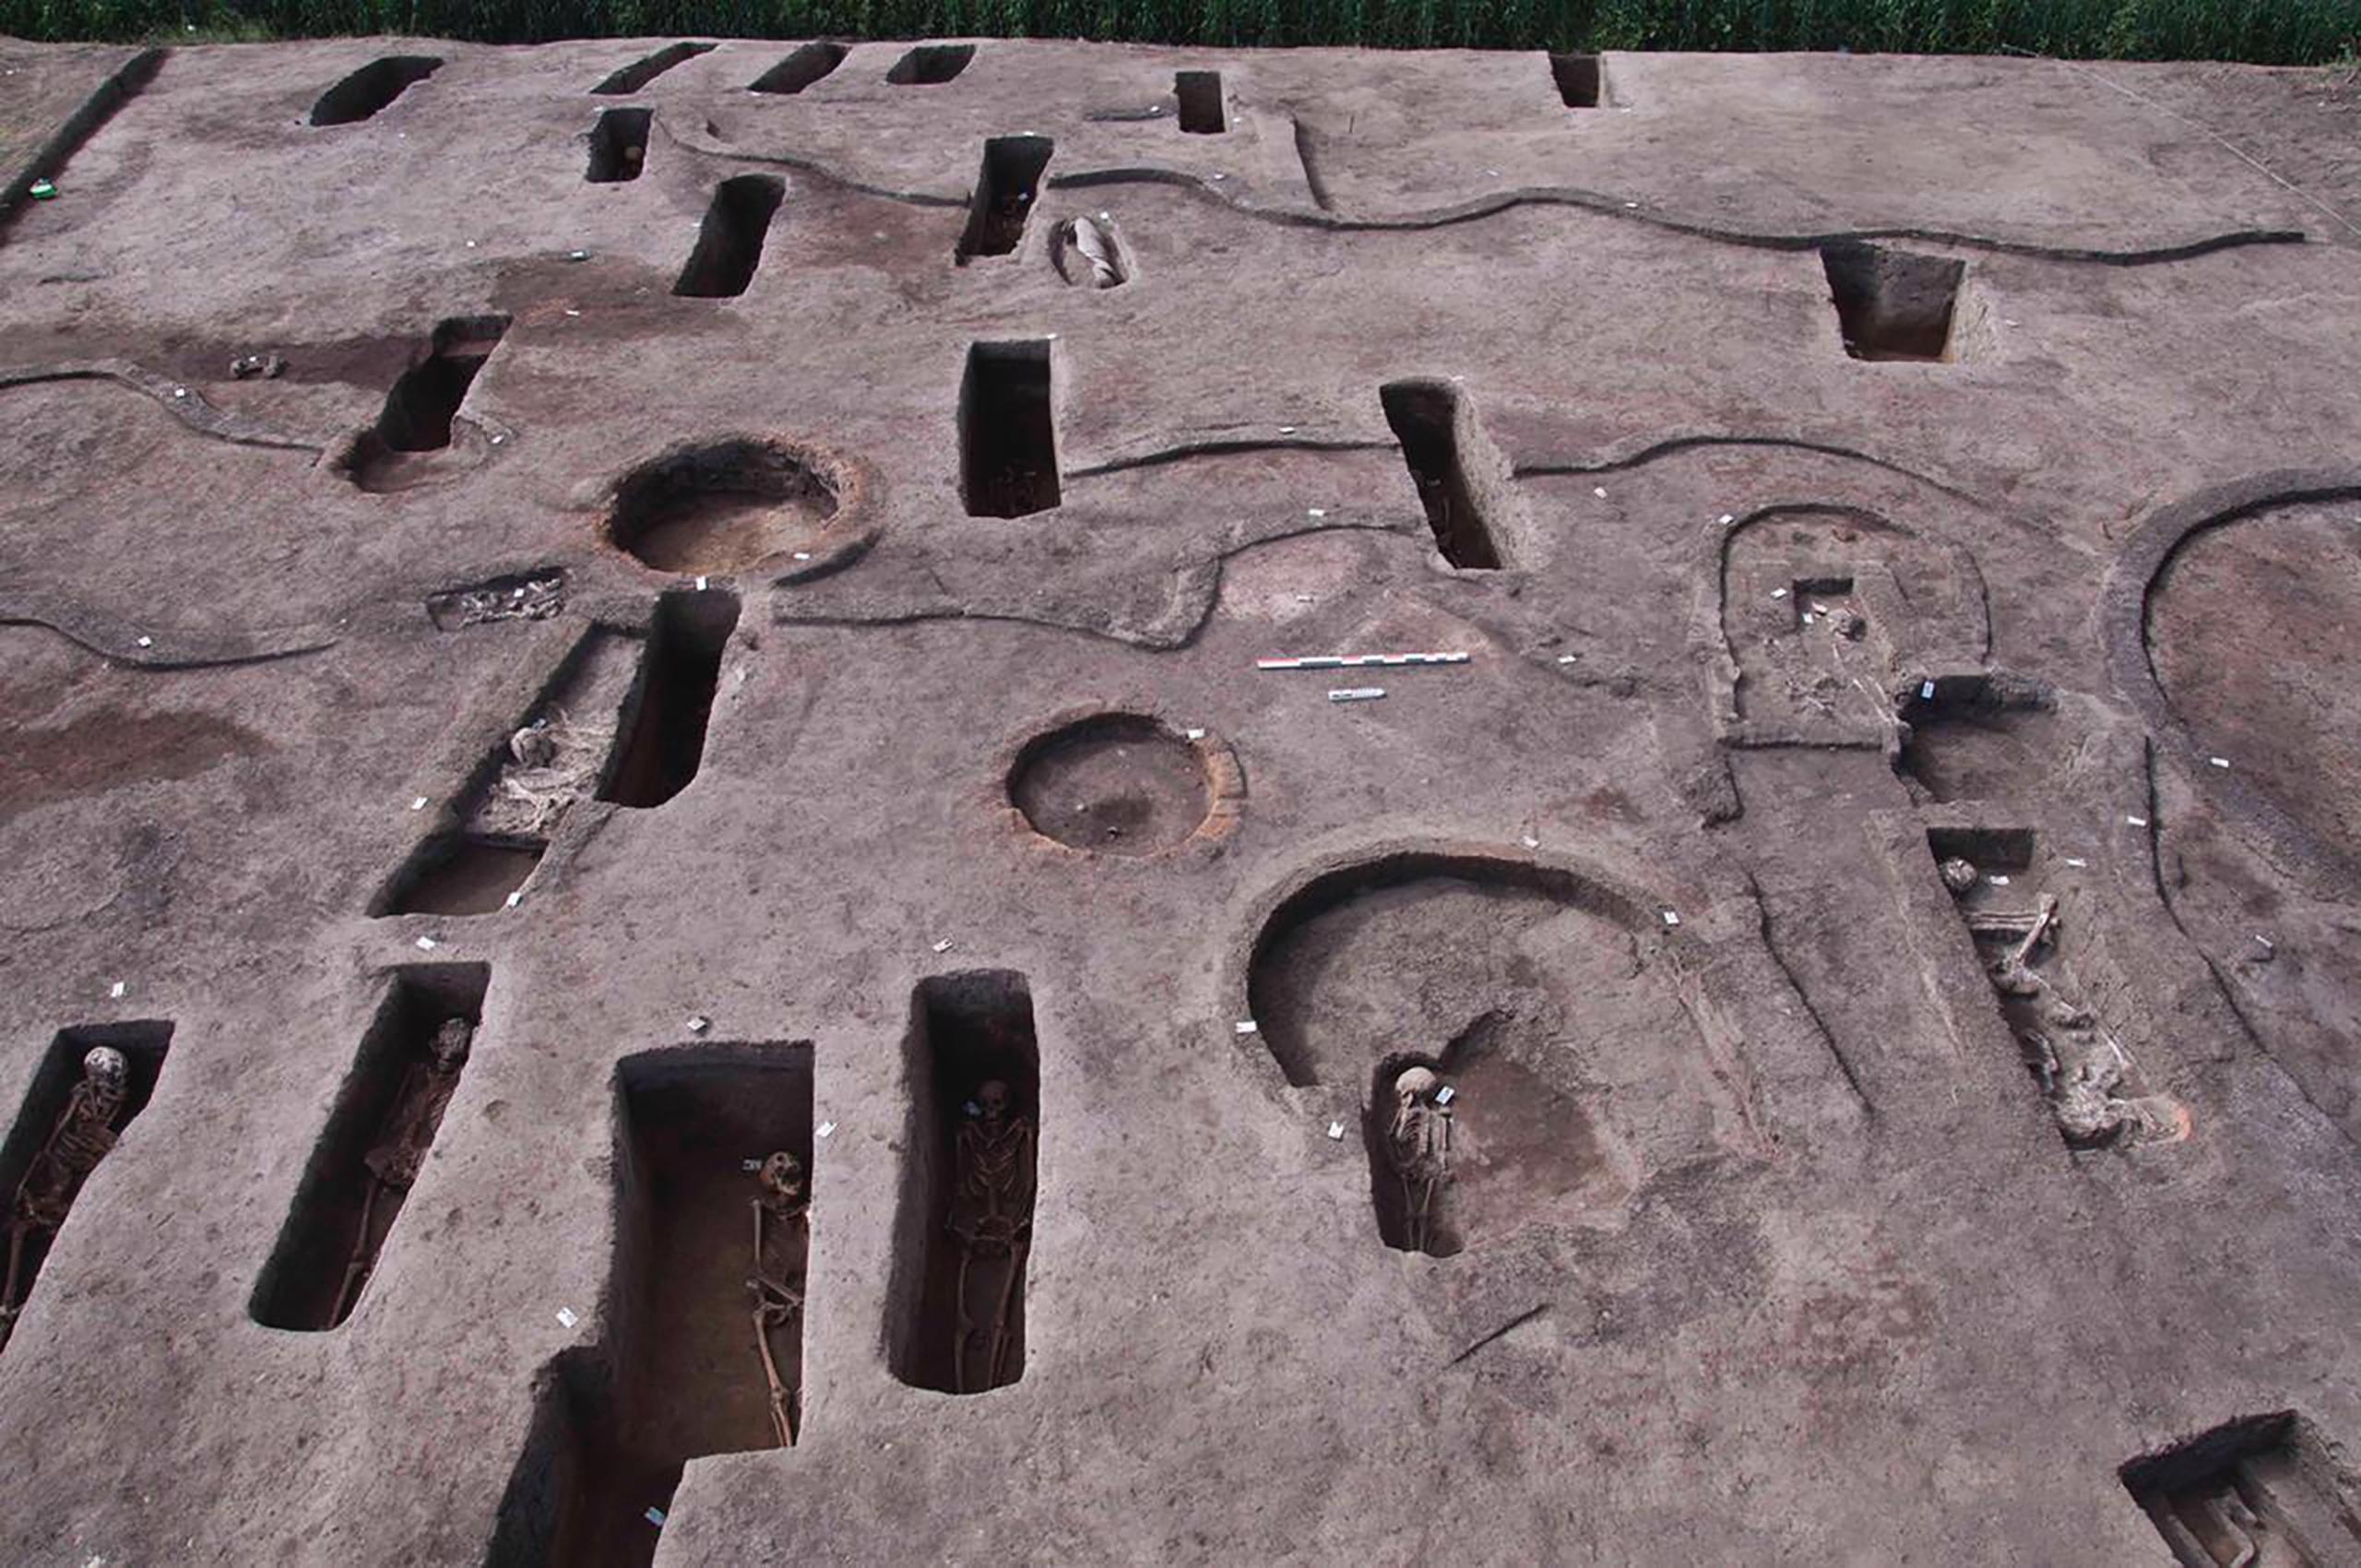 Tumbas antiguas recientemente descubiertas, algunas con restos humanos, en el sitio arqueológico de  Koum el-Khulgan, provincia del Delta del Nilo, 150 kilómetros al noreste de El Cairo, Egipto.